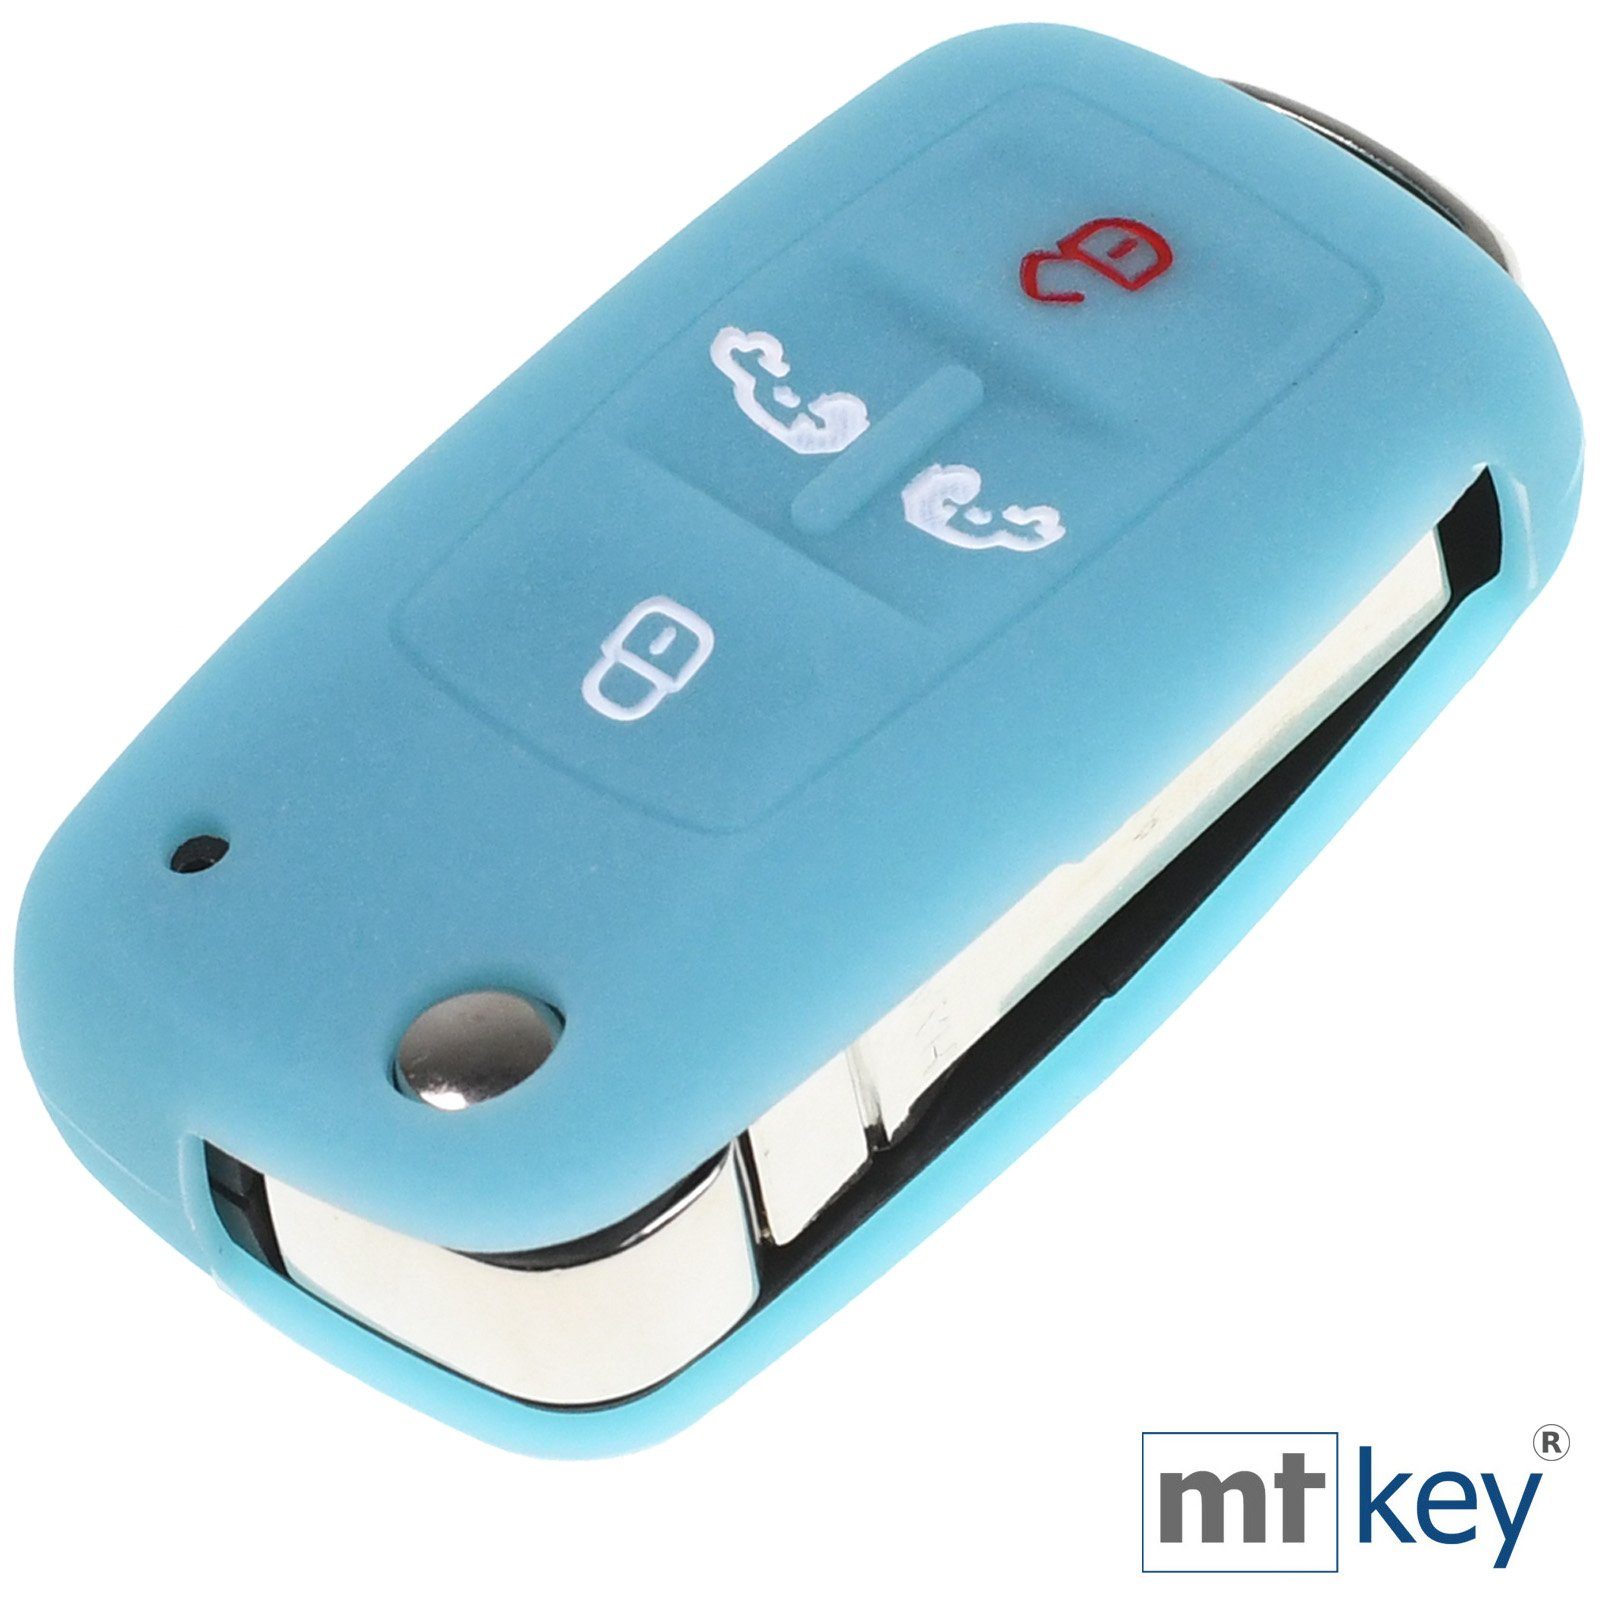 Blau, Multivan im T5 mt-key Schlüssel Design T6 VW Schlüsseltasche Autoschlüssel fluoreszierend Tasten Alhambra Caddy für Wabe 4 Silikon Schutzhülle Seat Sharan